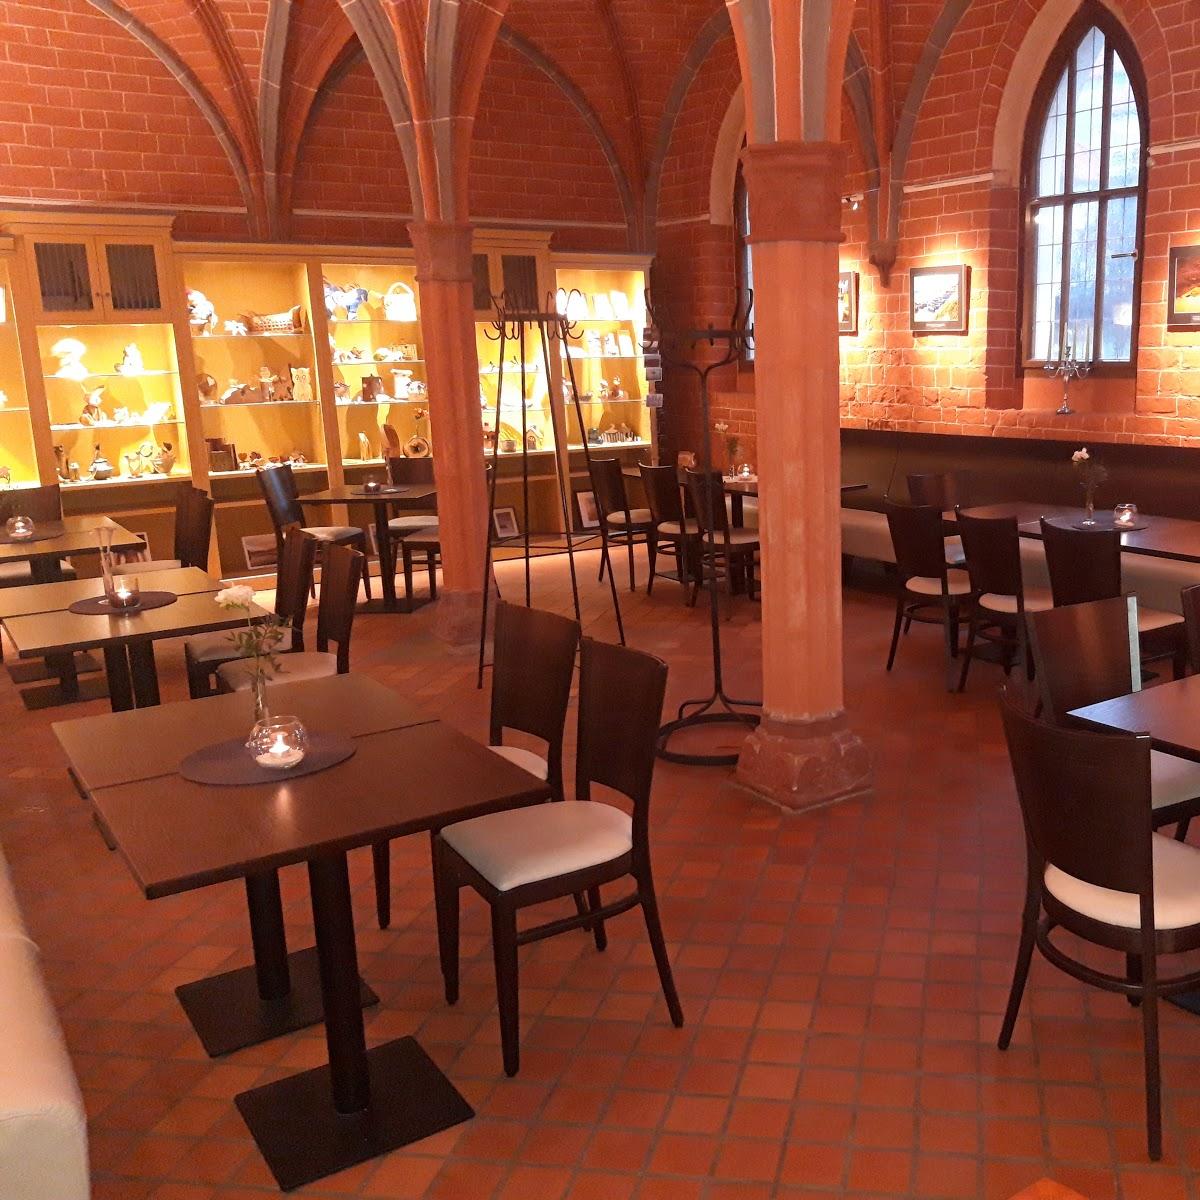 Restaurant "KlosterCafé" in Prenzlau